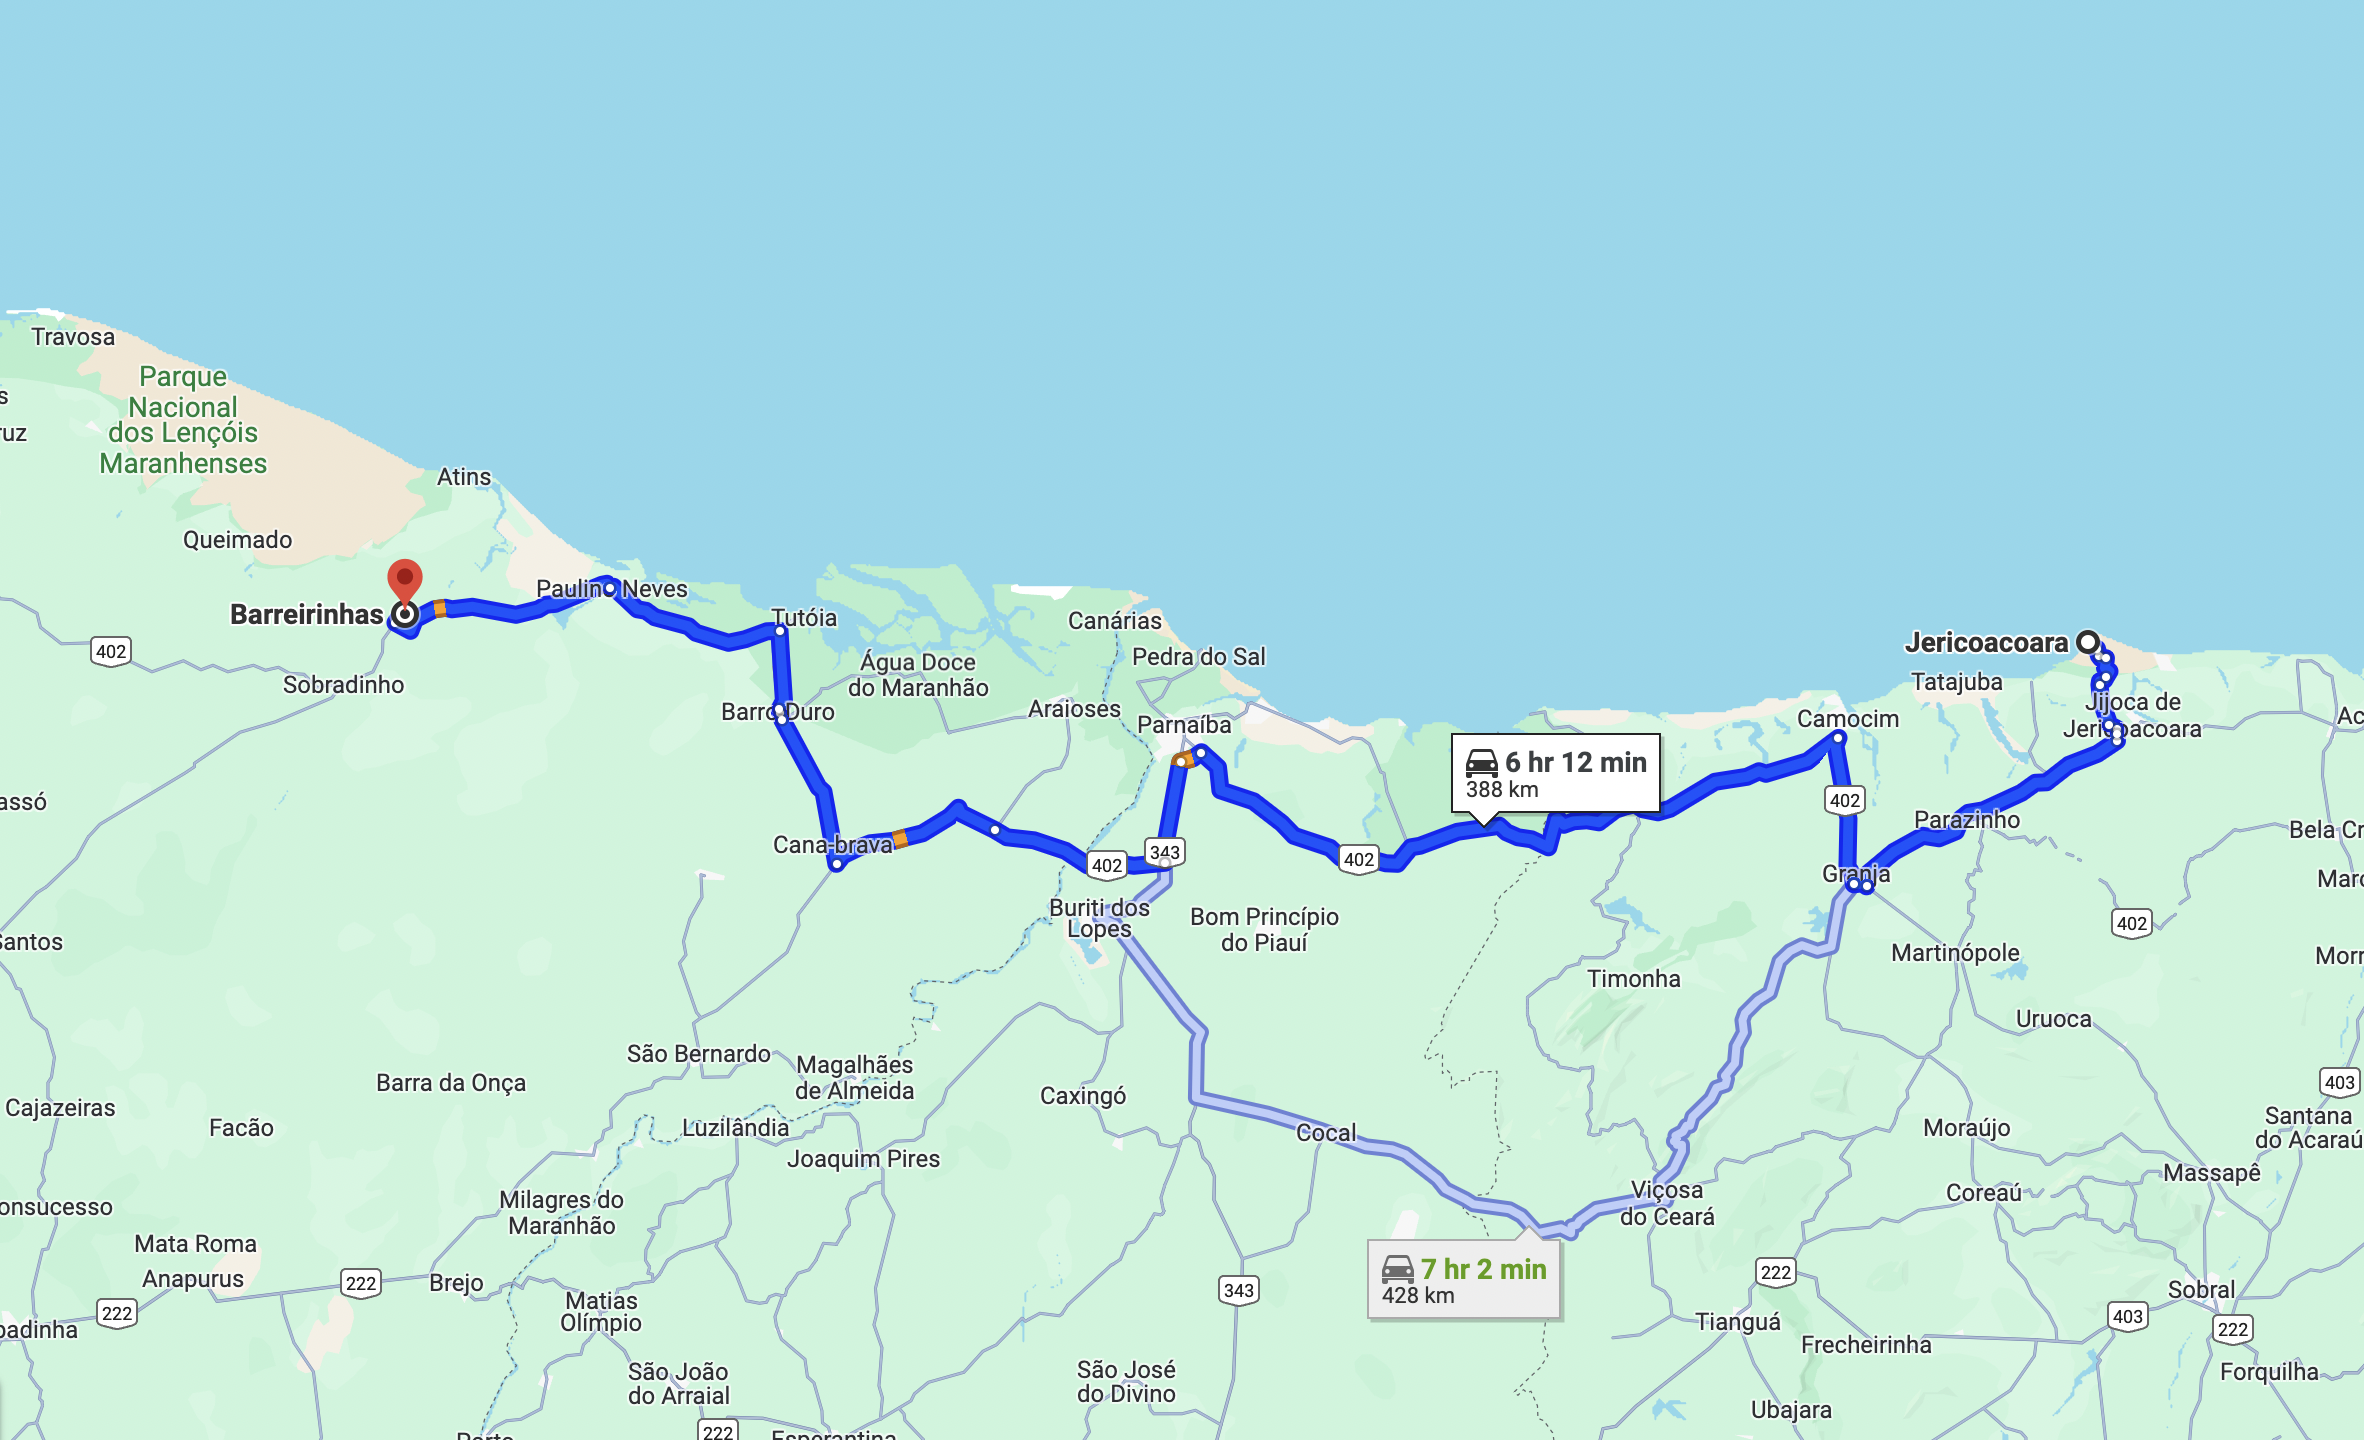 How to get to Barreirinhas from Jericoacoara? - Lencois Maranhenses